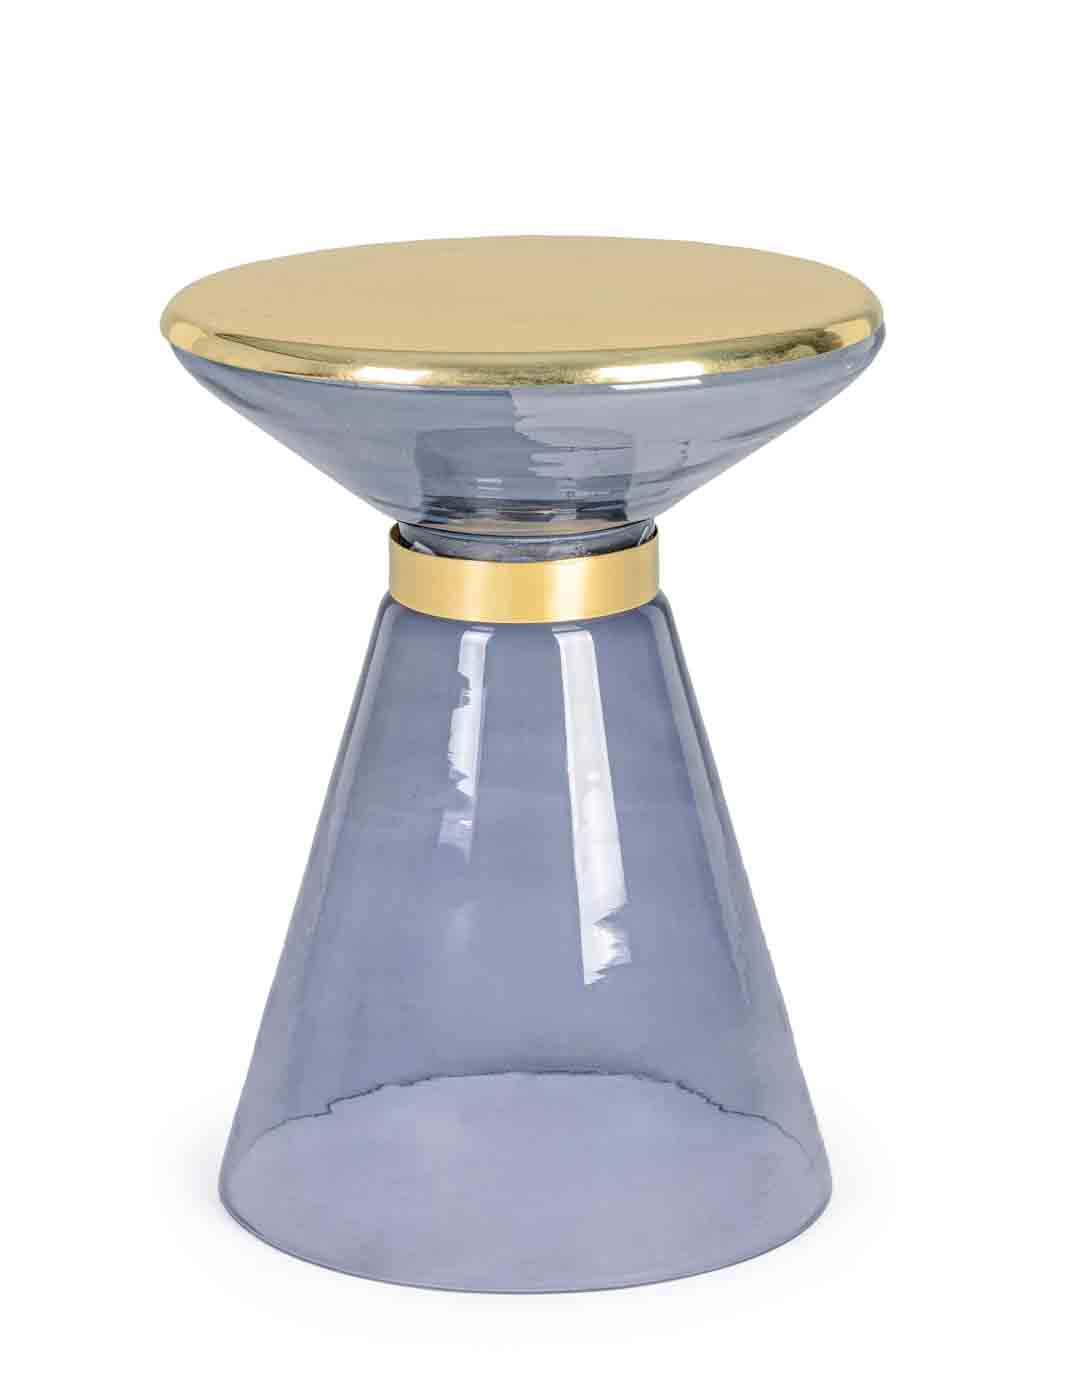 Der Beistelltisch Meriel hat ein modernes Design. Gefertigt wurde der Tisch aus Glas, die Oberfläche ist aus Messing vergoldetem Metall. Der Tisch hat einen grauen Farbton.